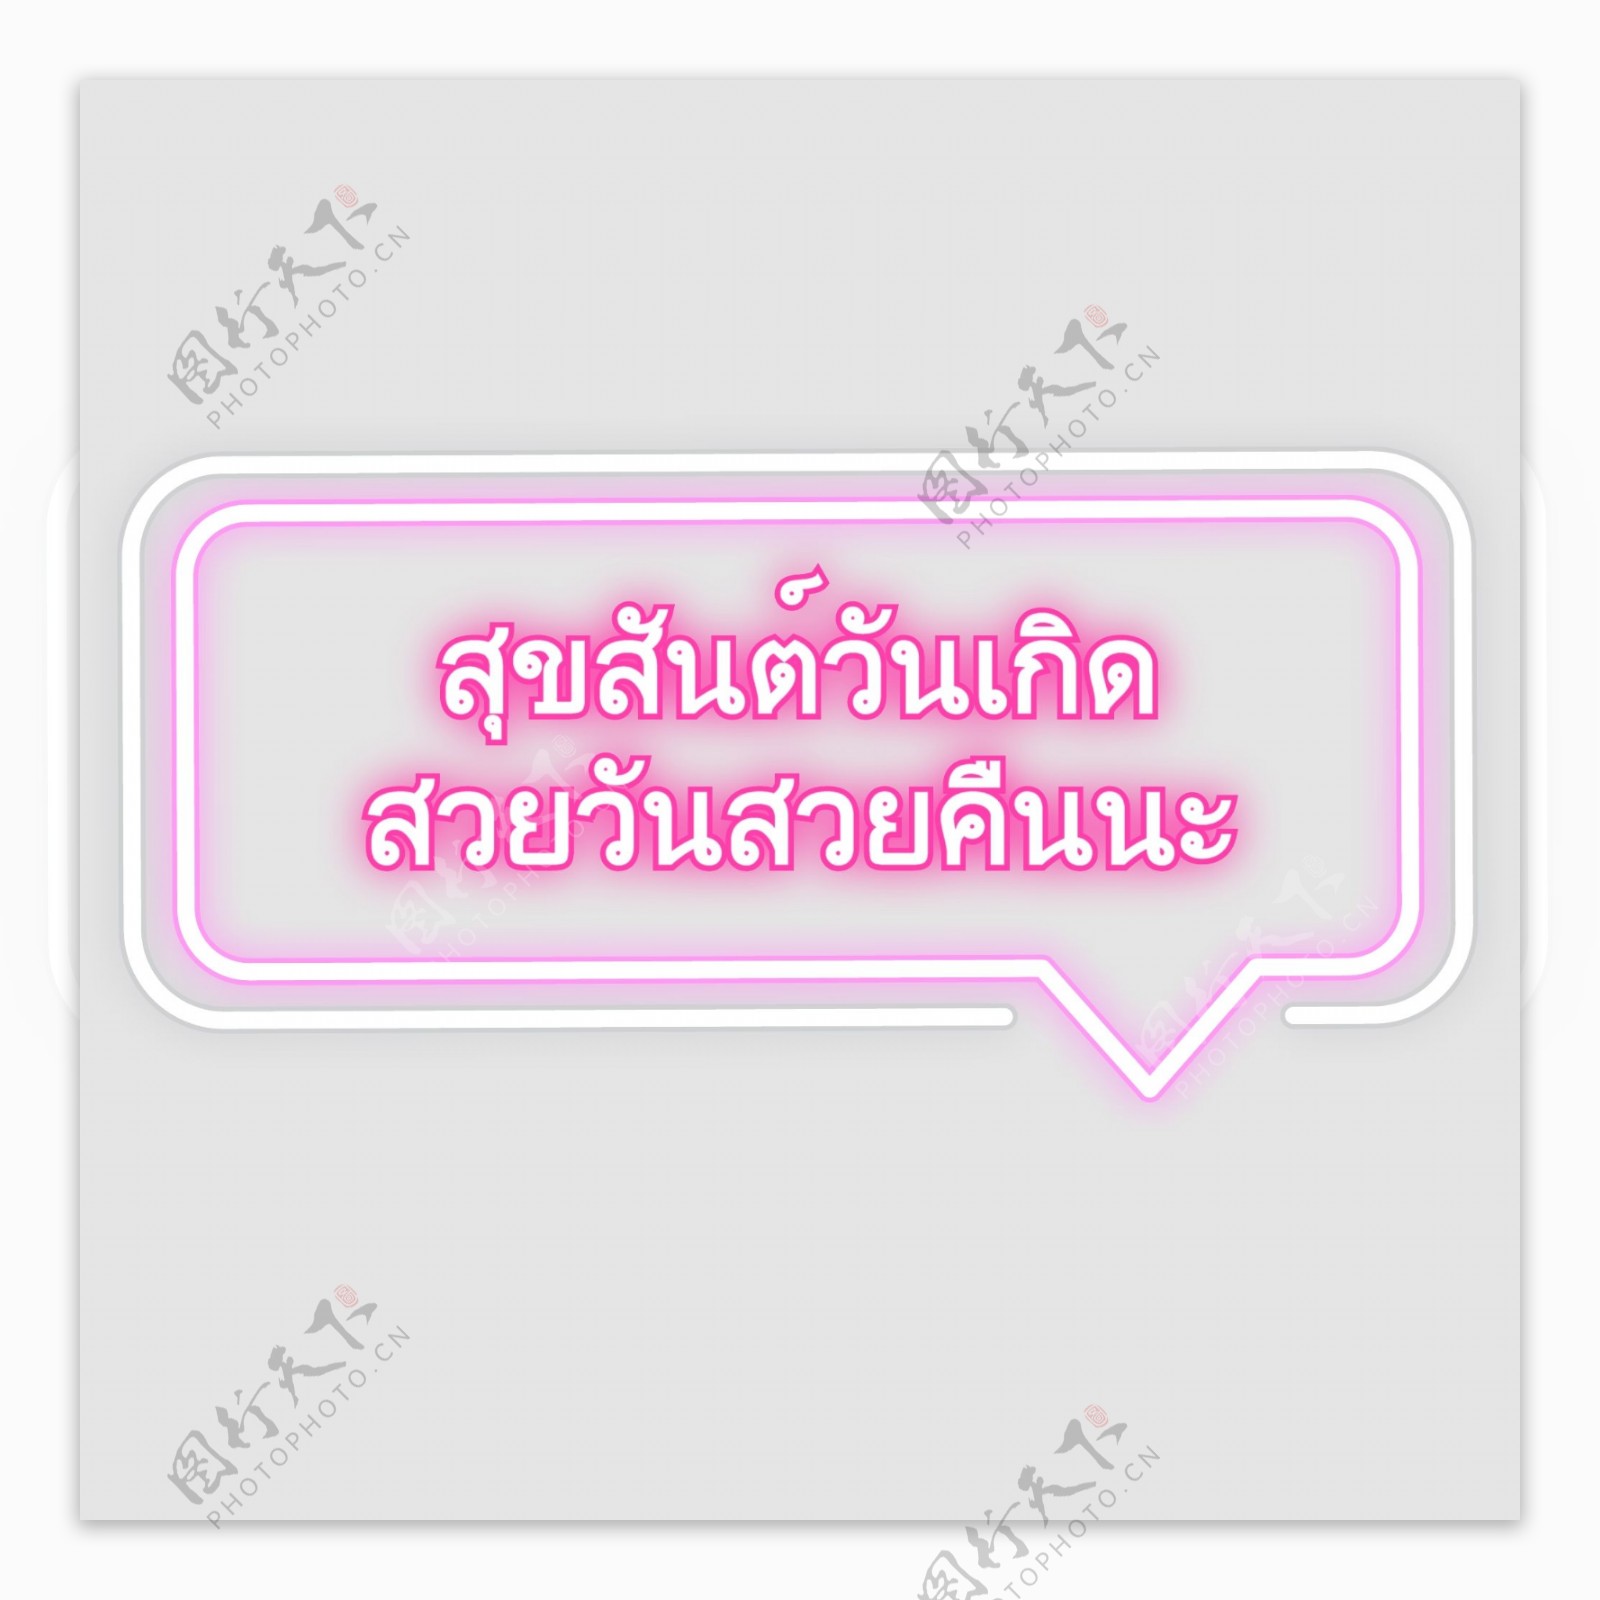 泰国字母的字体都漂亮的粉红色生日快乐